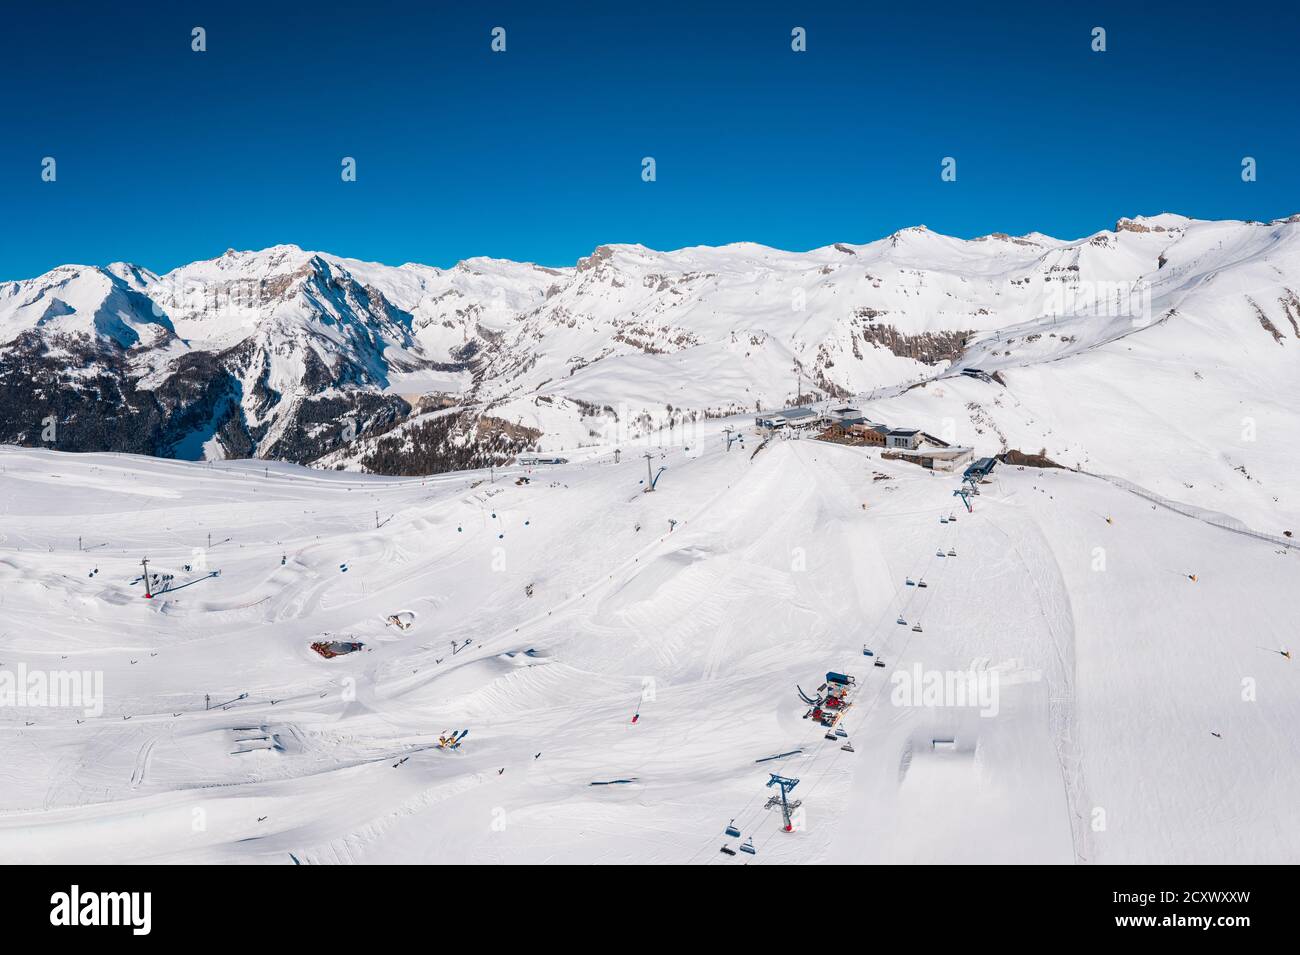 Vue aérienne de la station de ski de Crans-montana avec le parc des neiges et le télésiège lors d'une journée d'hiver ensoleillée dans les alpes en Valais, Suisse Banque D'Images